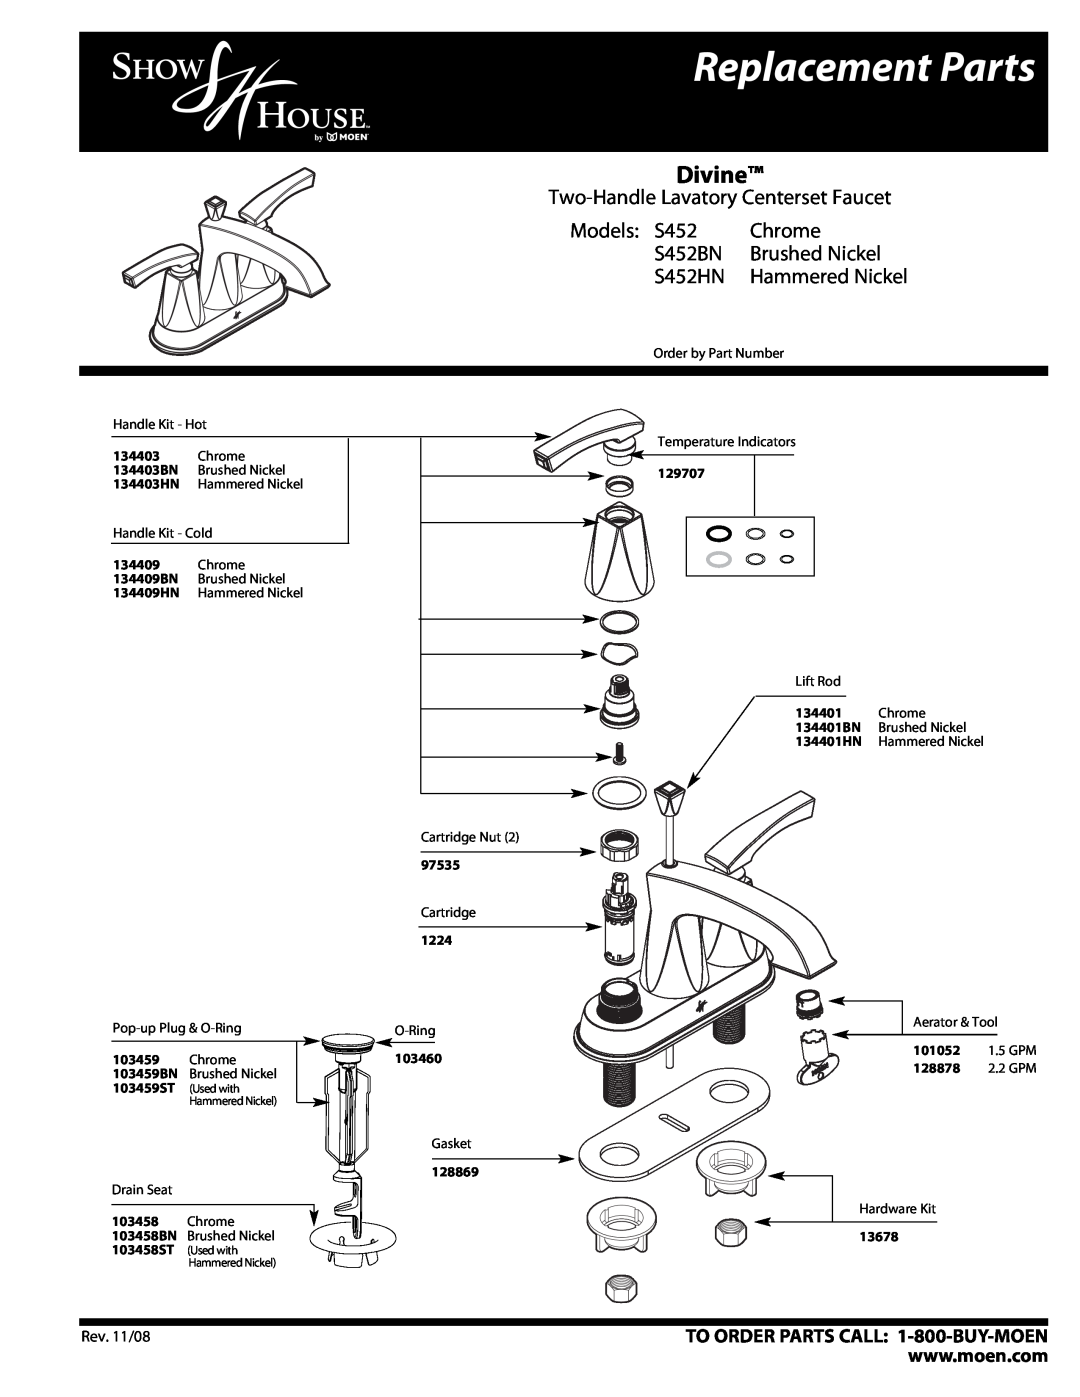 Moen S452HN manual Replacement Parts, Divine, Two-Handle Lavatory Centerset Faucet, Models S452, Chrome, S452BN, 129707 